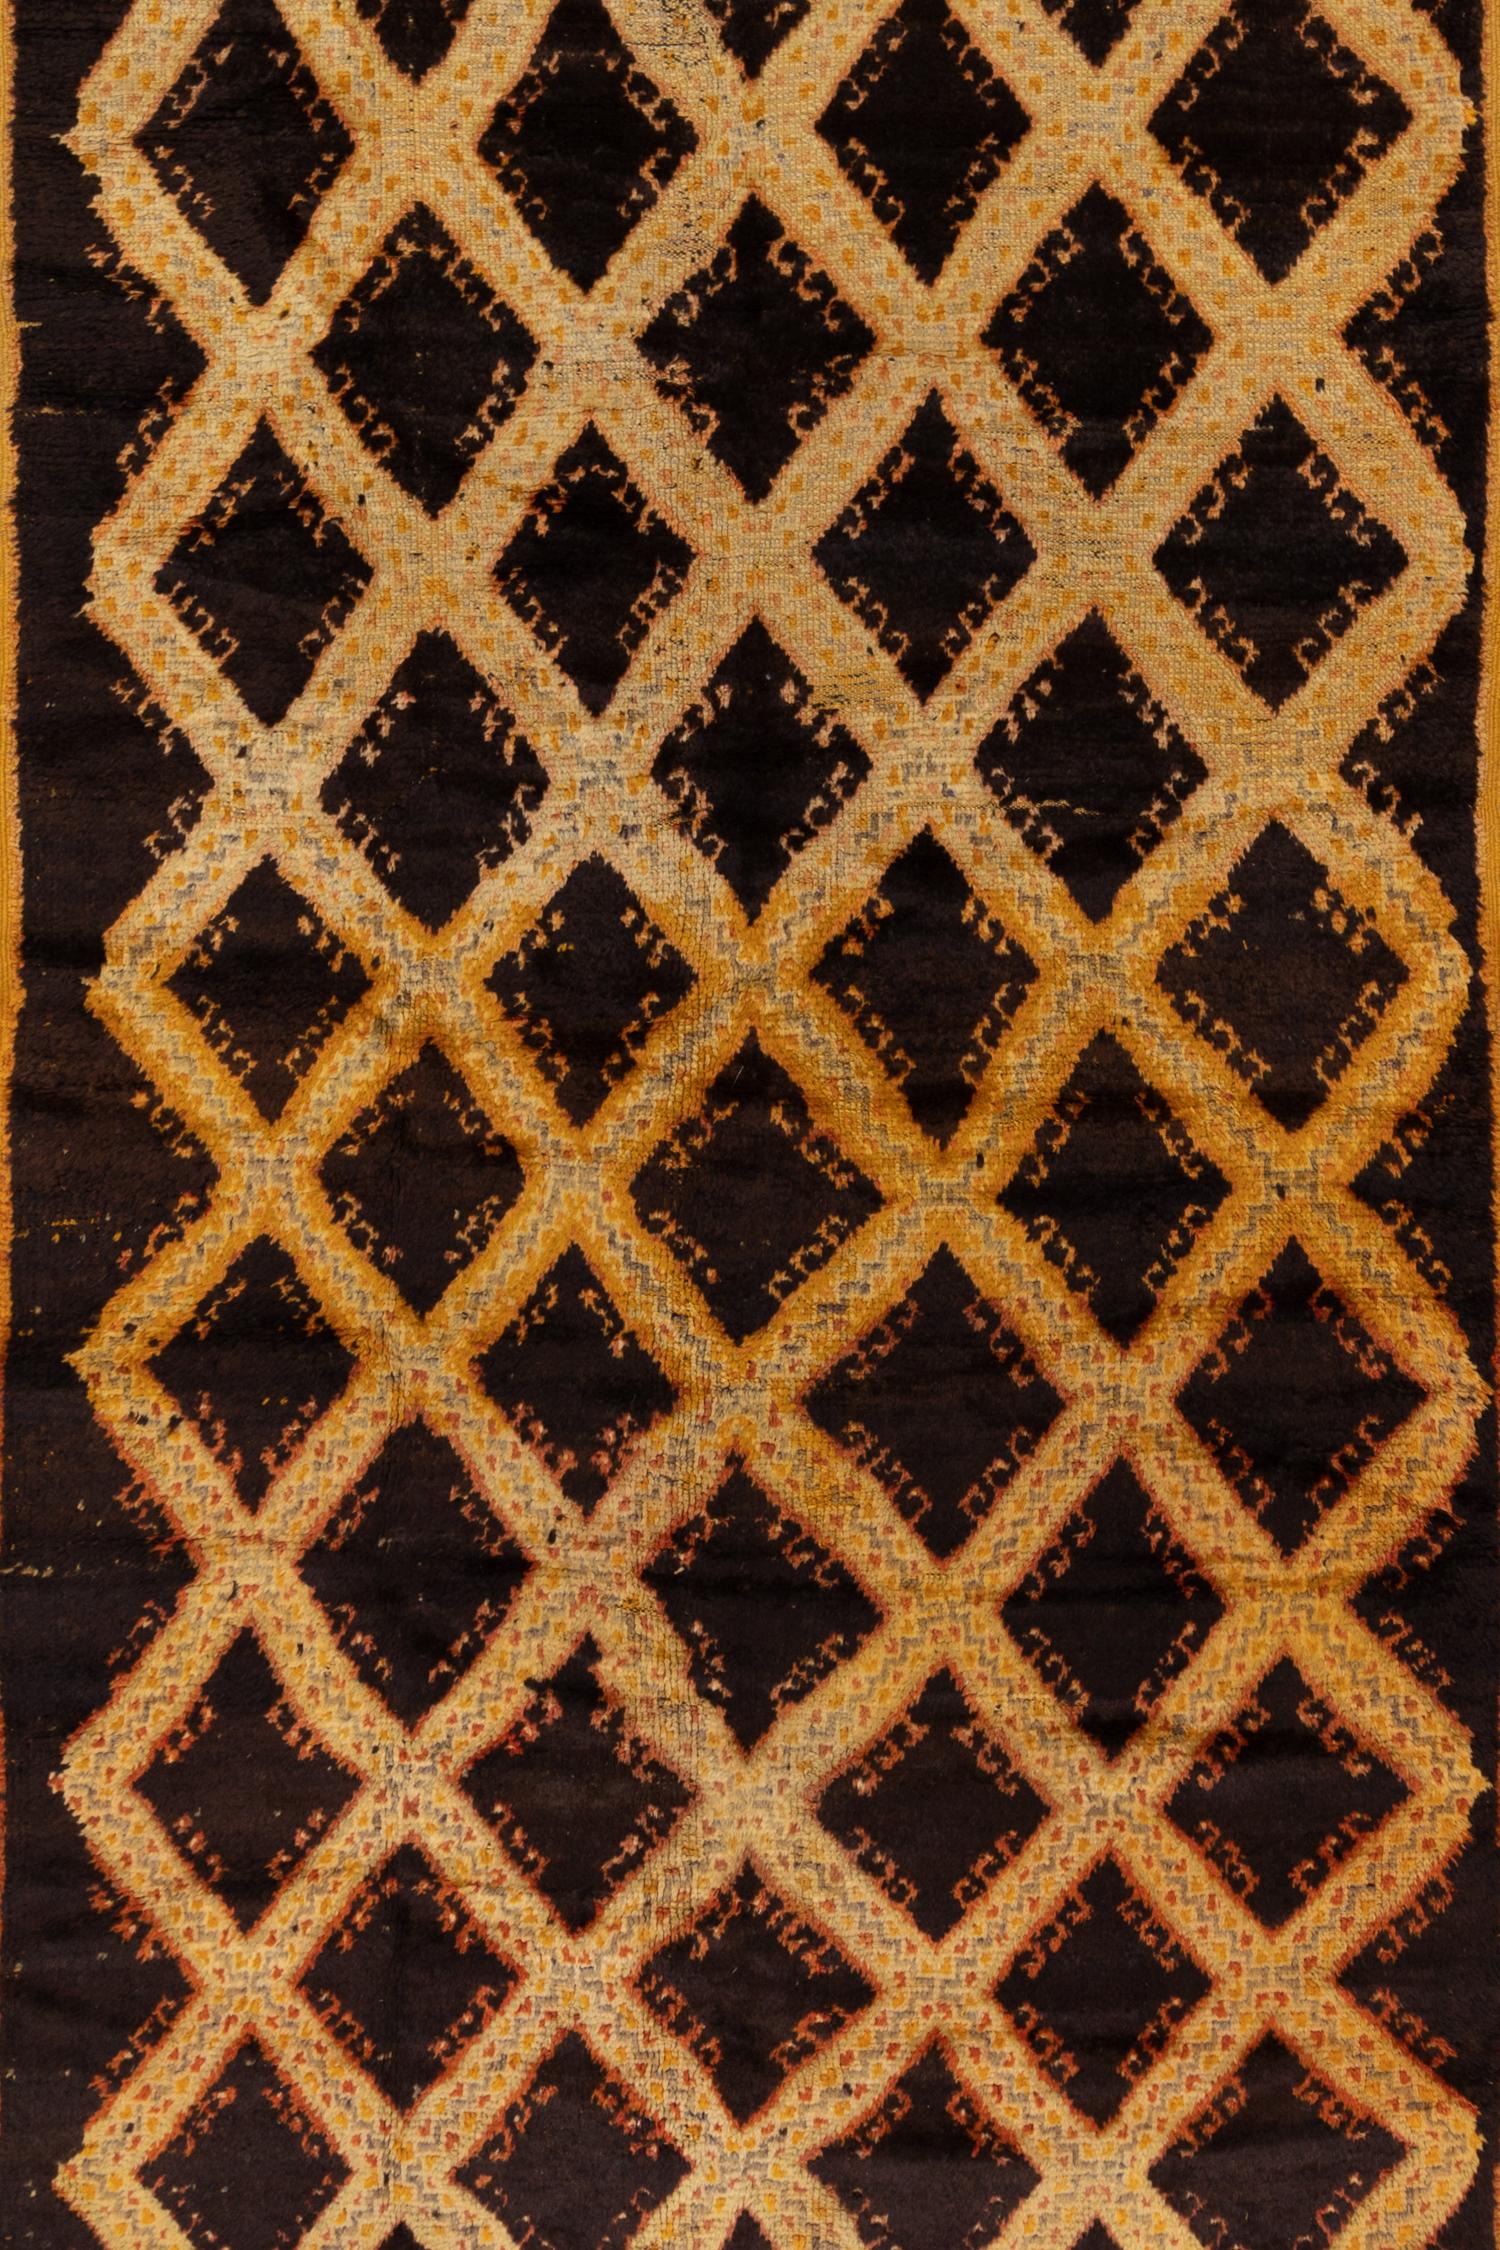 Altes Sammlerstück in ungewöhnlich großem Format, ausgezeichnetes Beispiel für einen originalen Taznakht-Teppich.

Anleitung zum Tragen: 2

Abnutzungserscheinungen:
Vintage- und antike Teppiche sind von Natur aus gebraucht und können Spuren ihrer